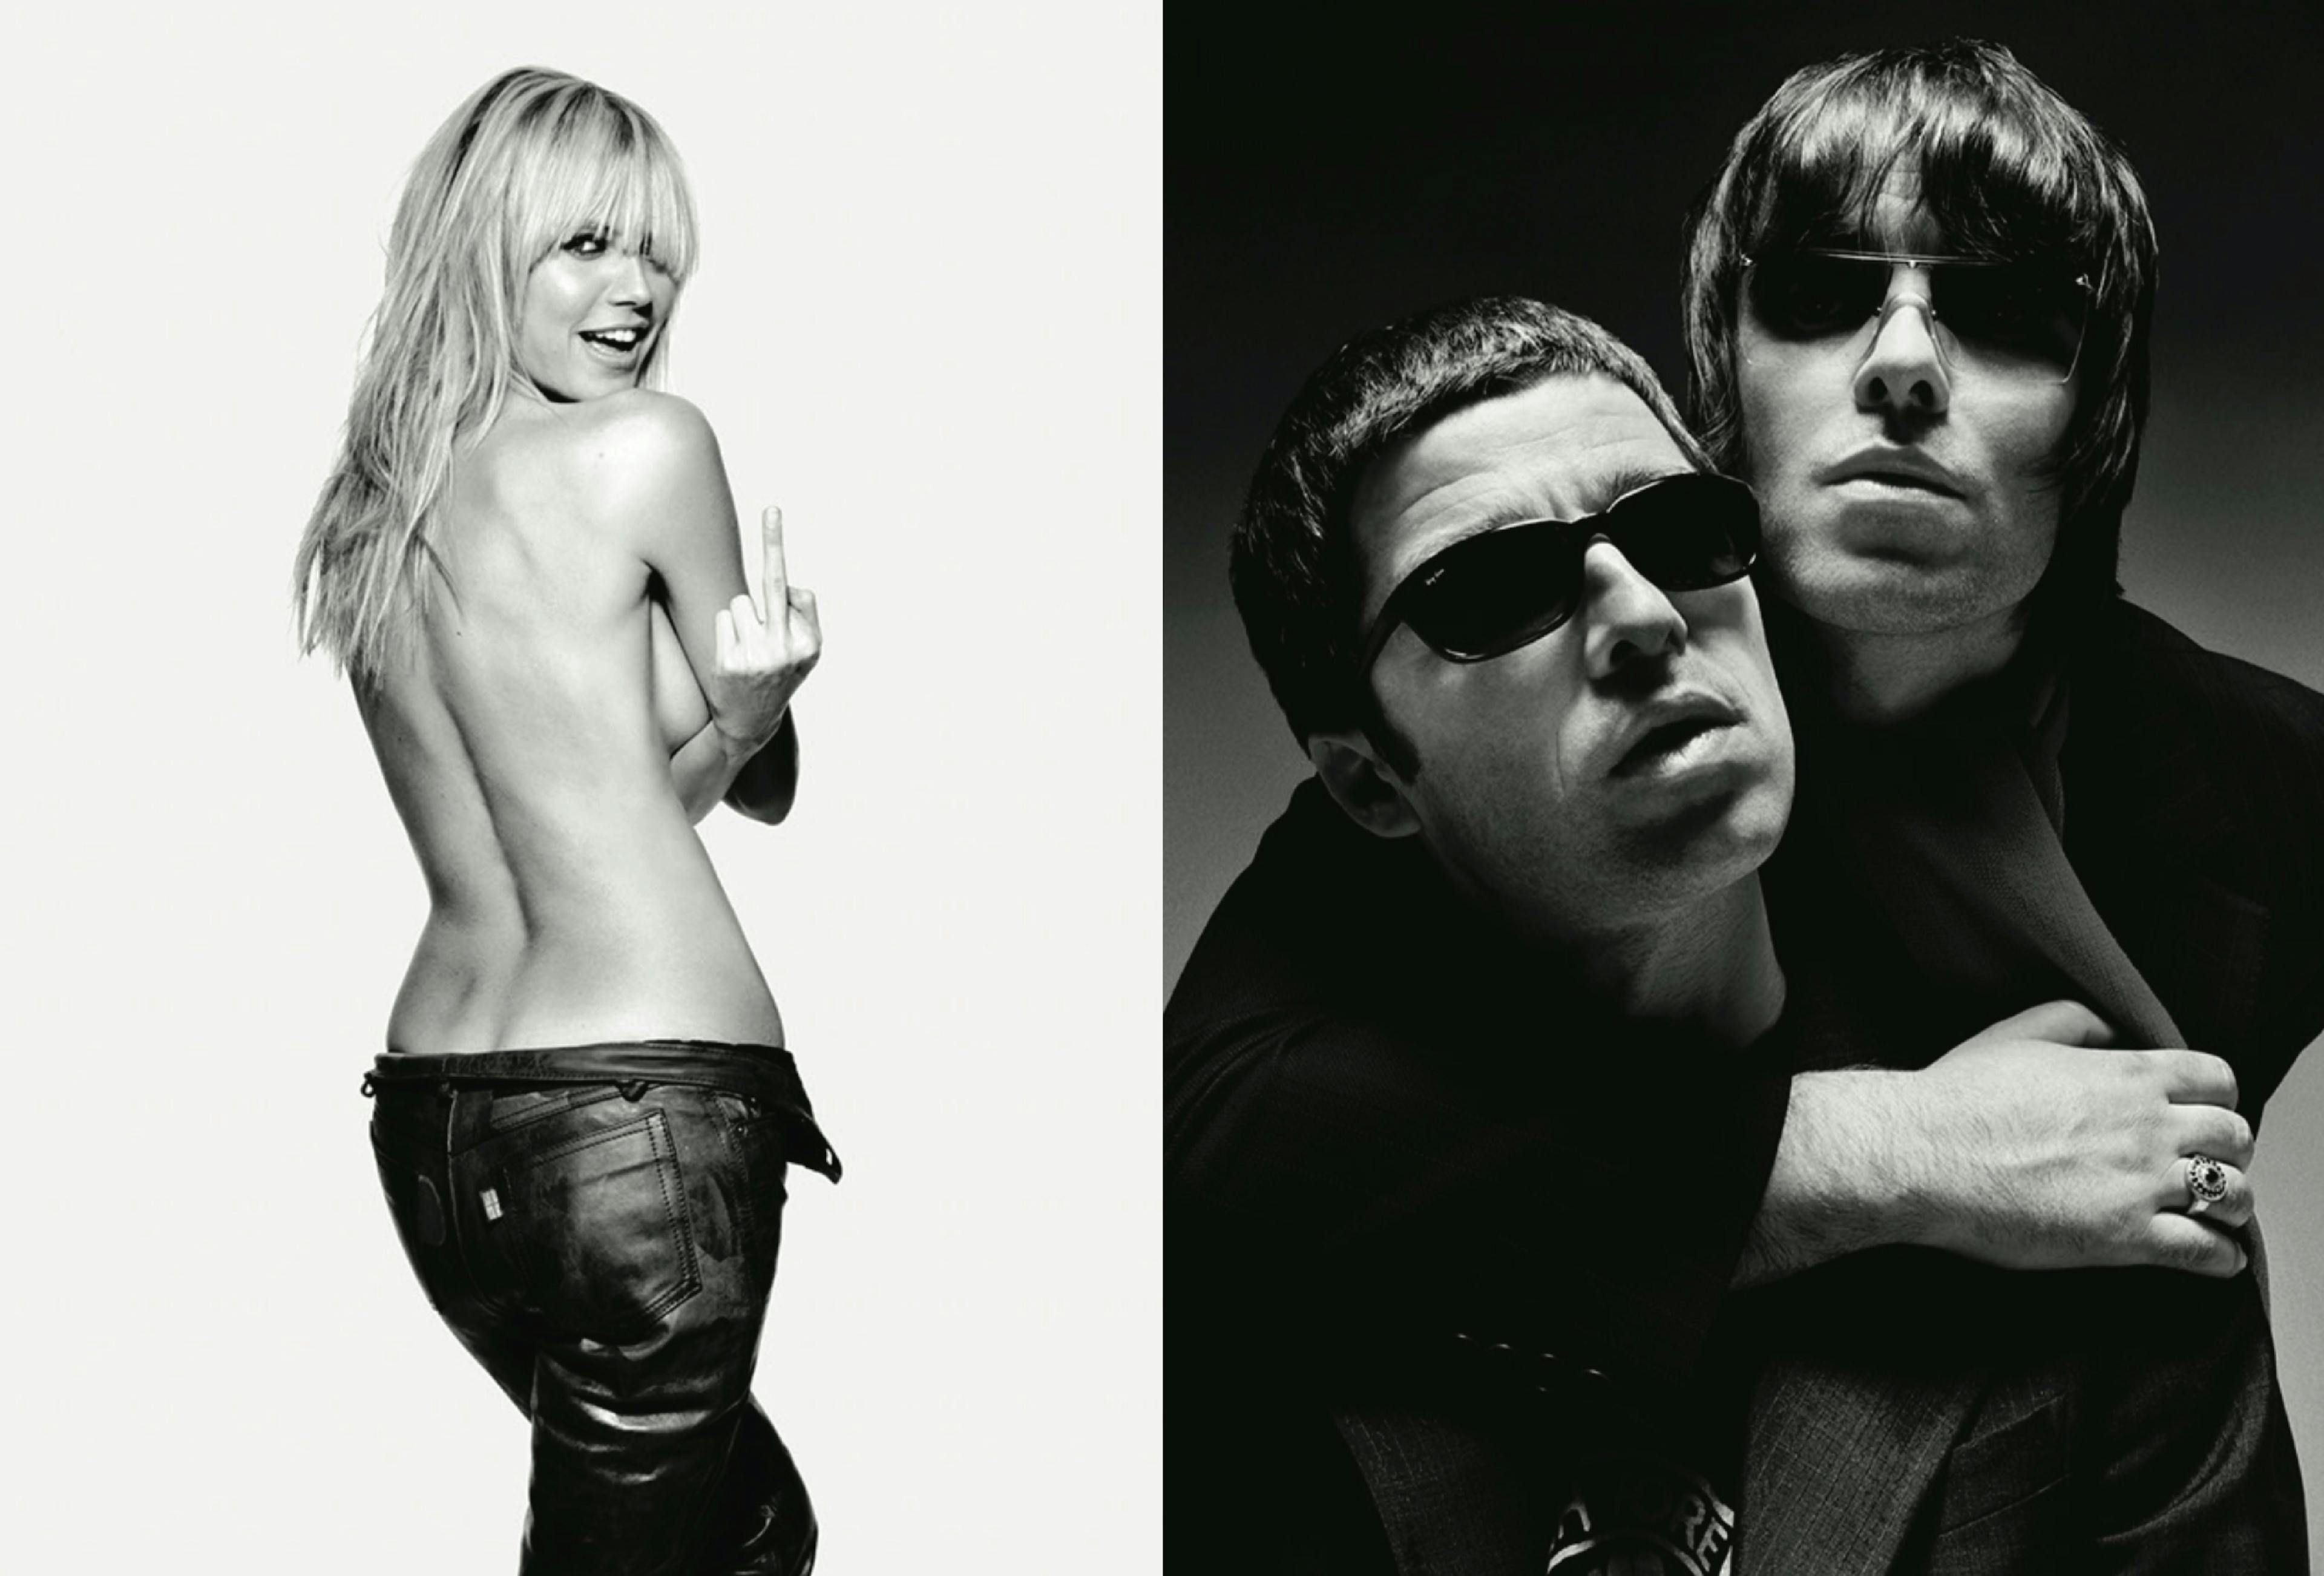 A sinistra: Heidi Klum, Italian GQ, 2003 © Rankin. A destra: Oasis, Q Magazine, 2002 © Rankin